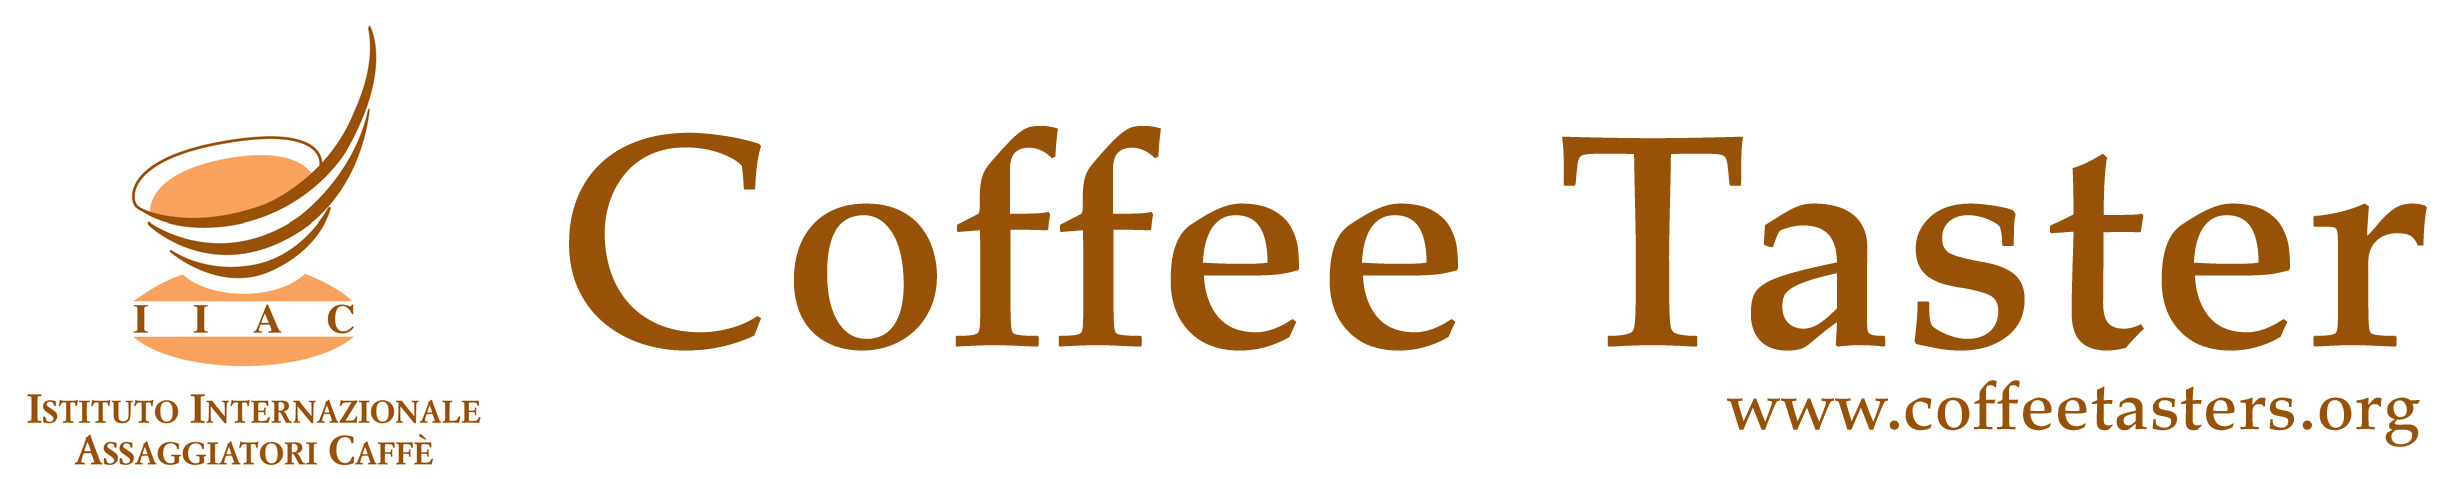 Istituto Internazionale Assaggiatori Caffè